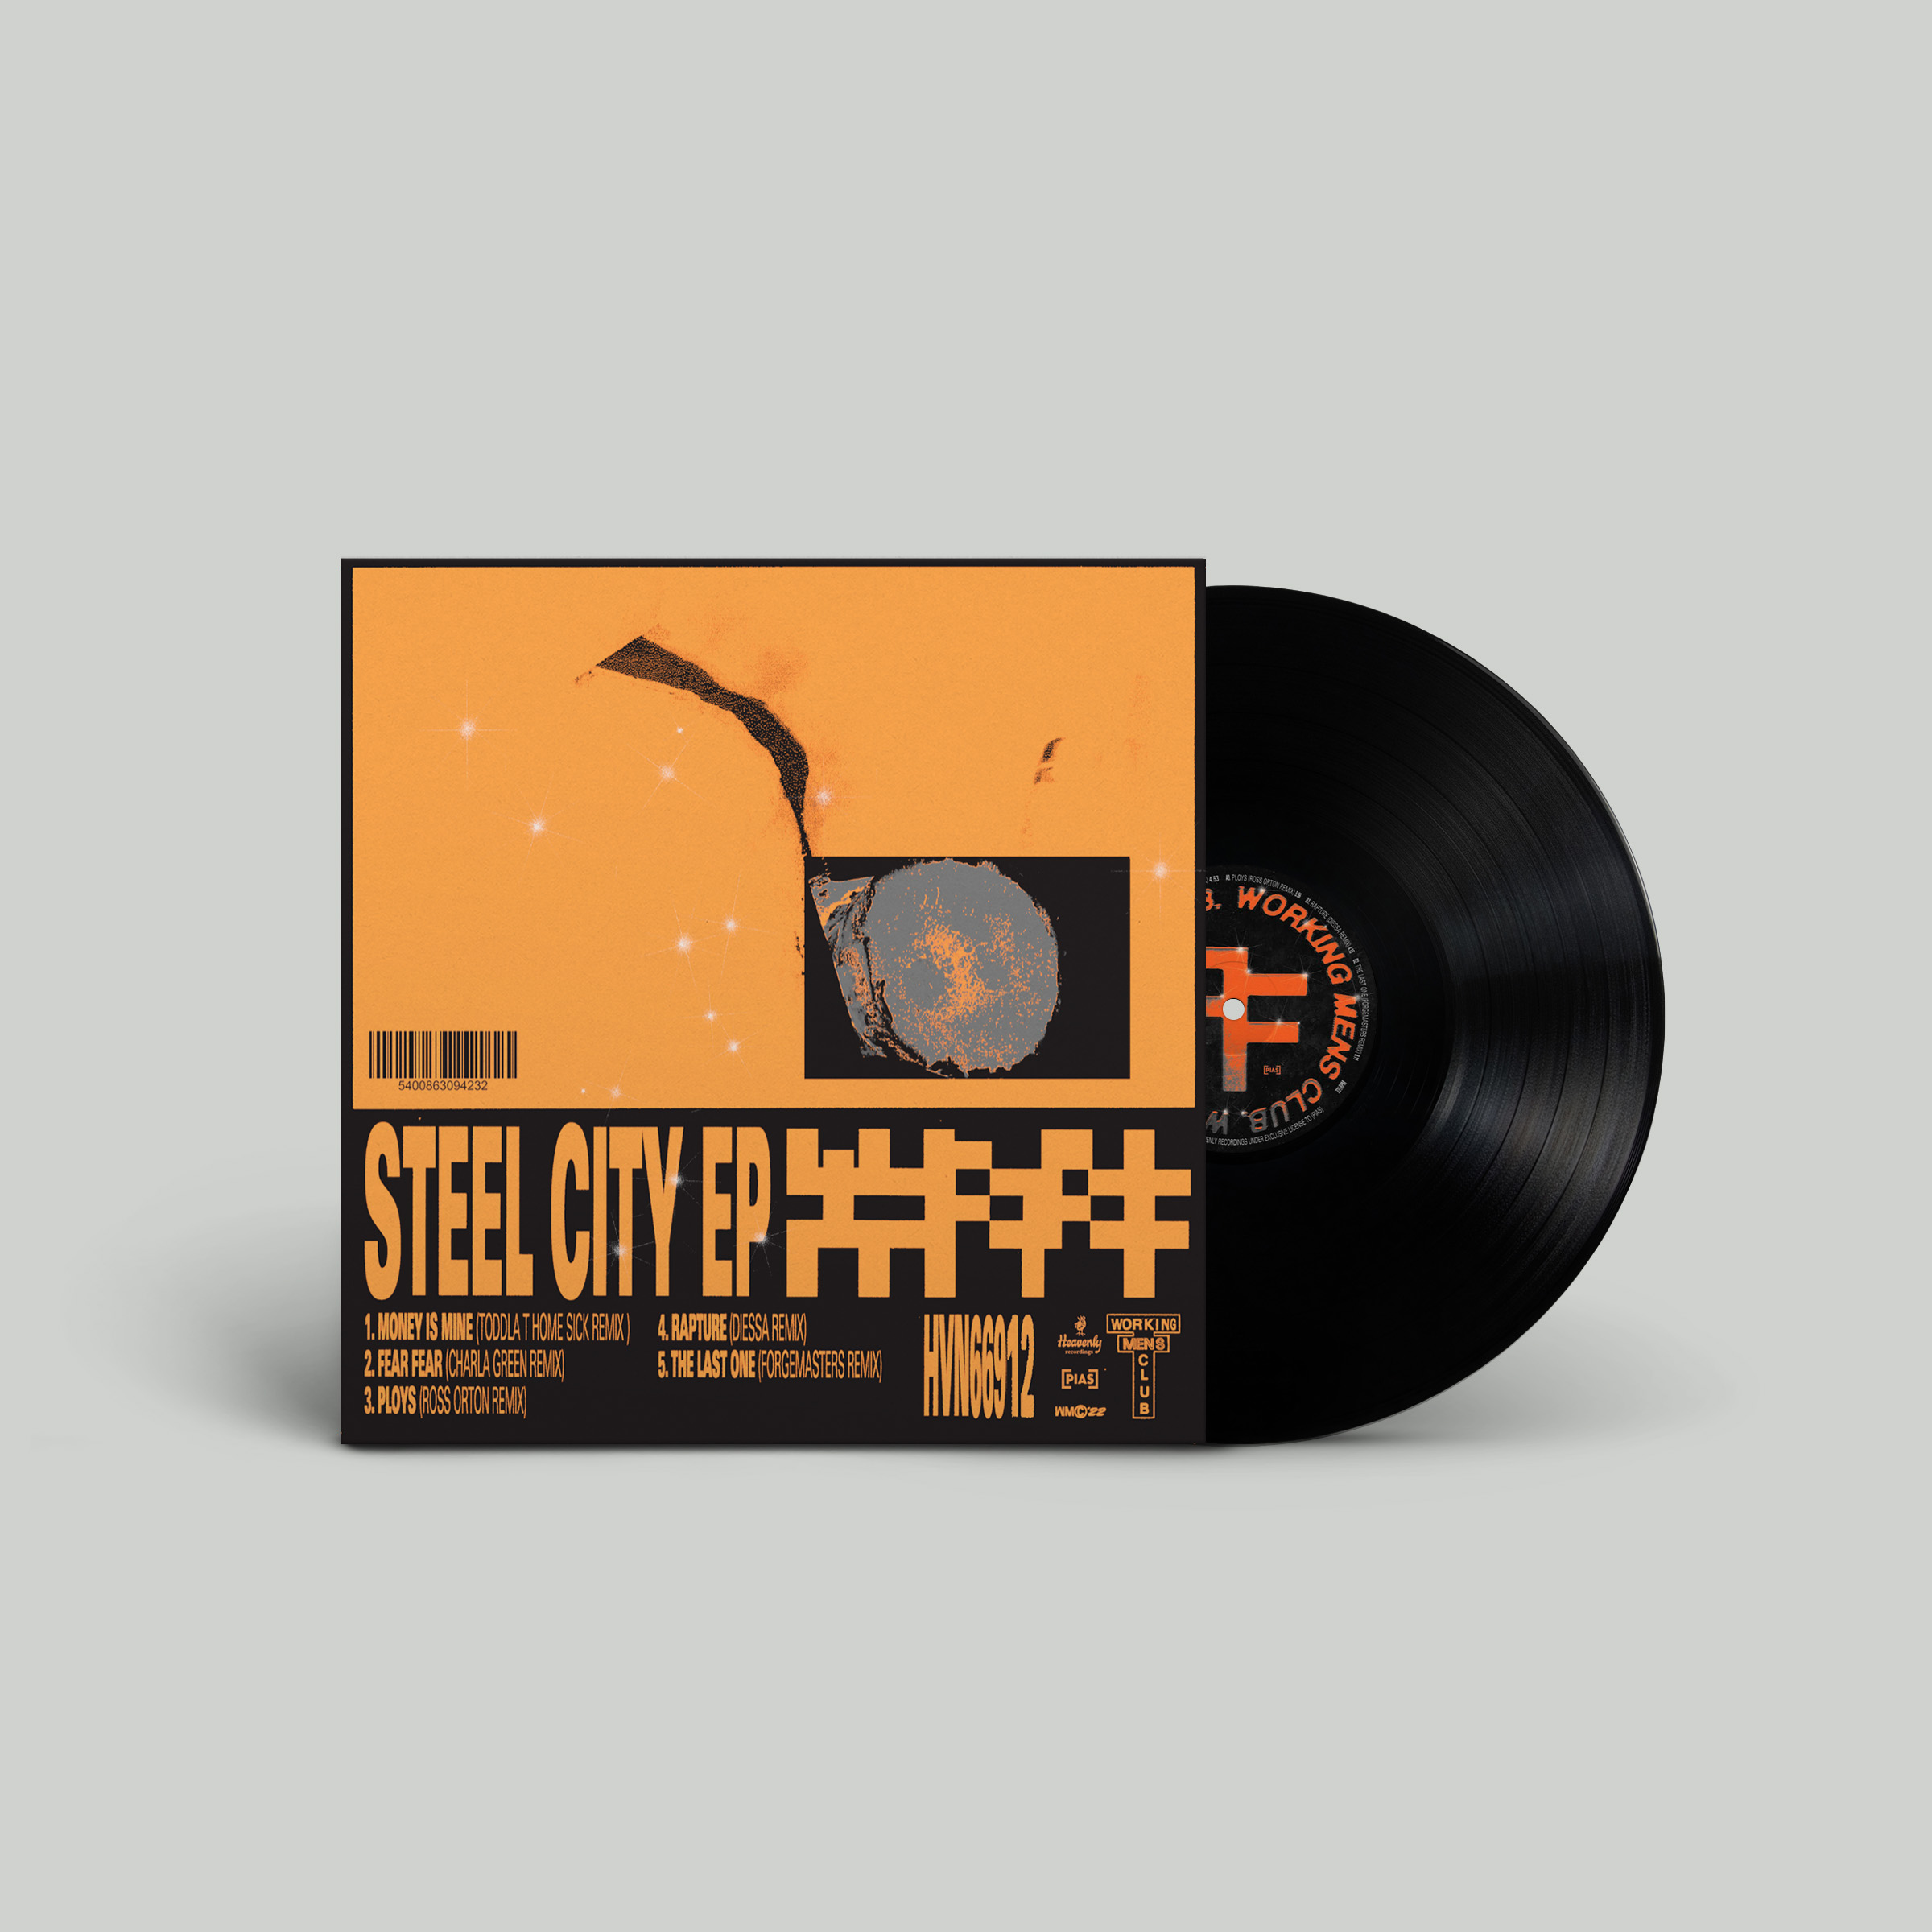 Working Men's Club - Steel City EP: Vinyl 12" EP